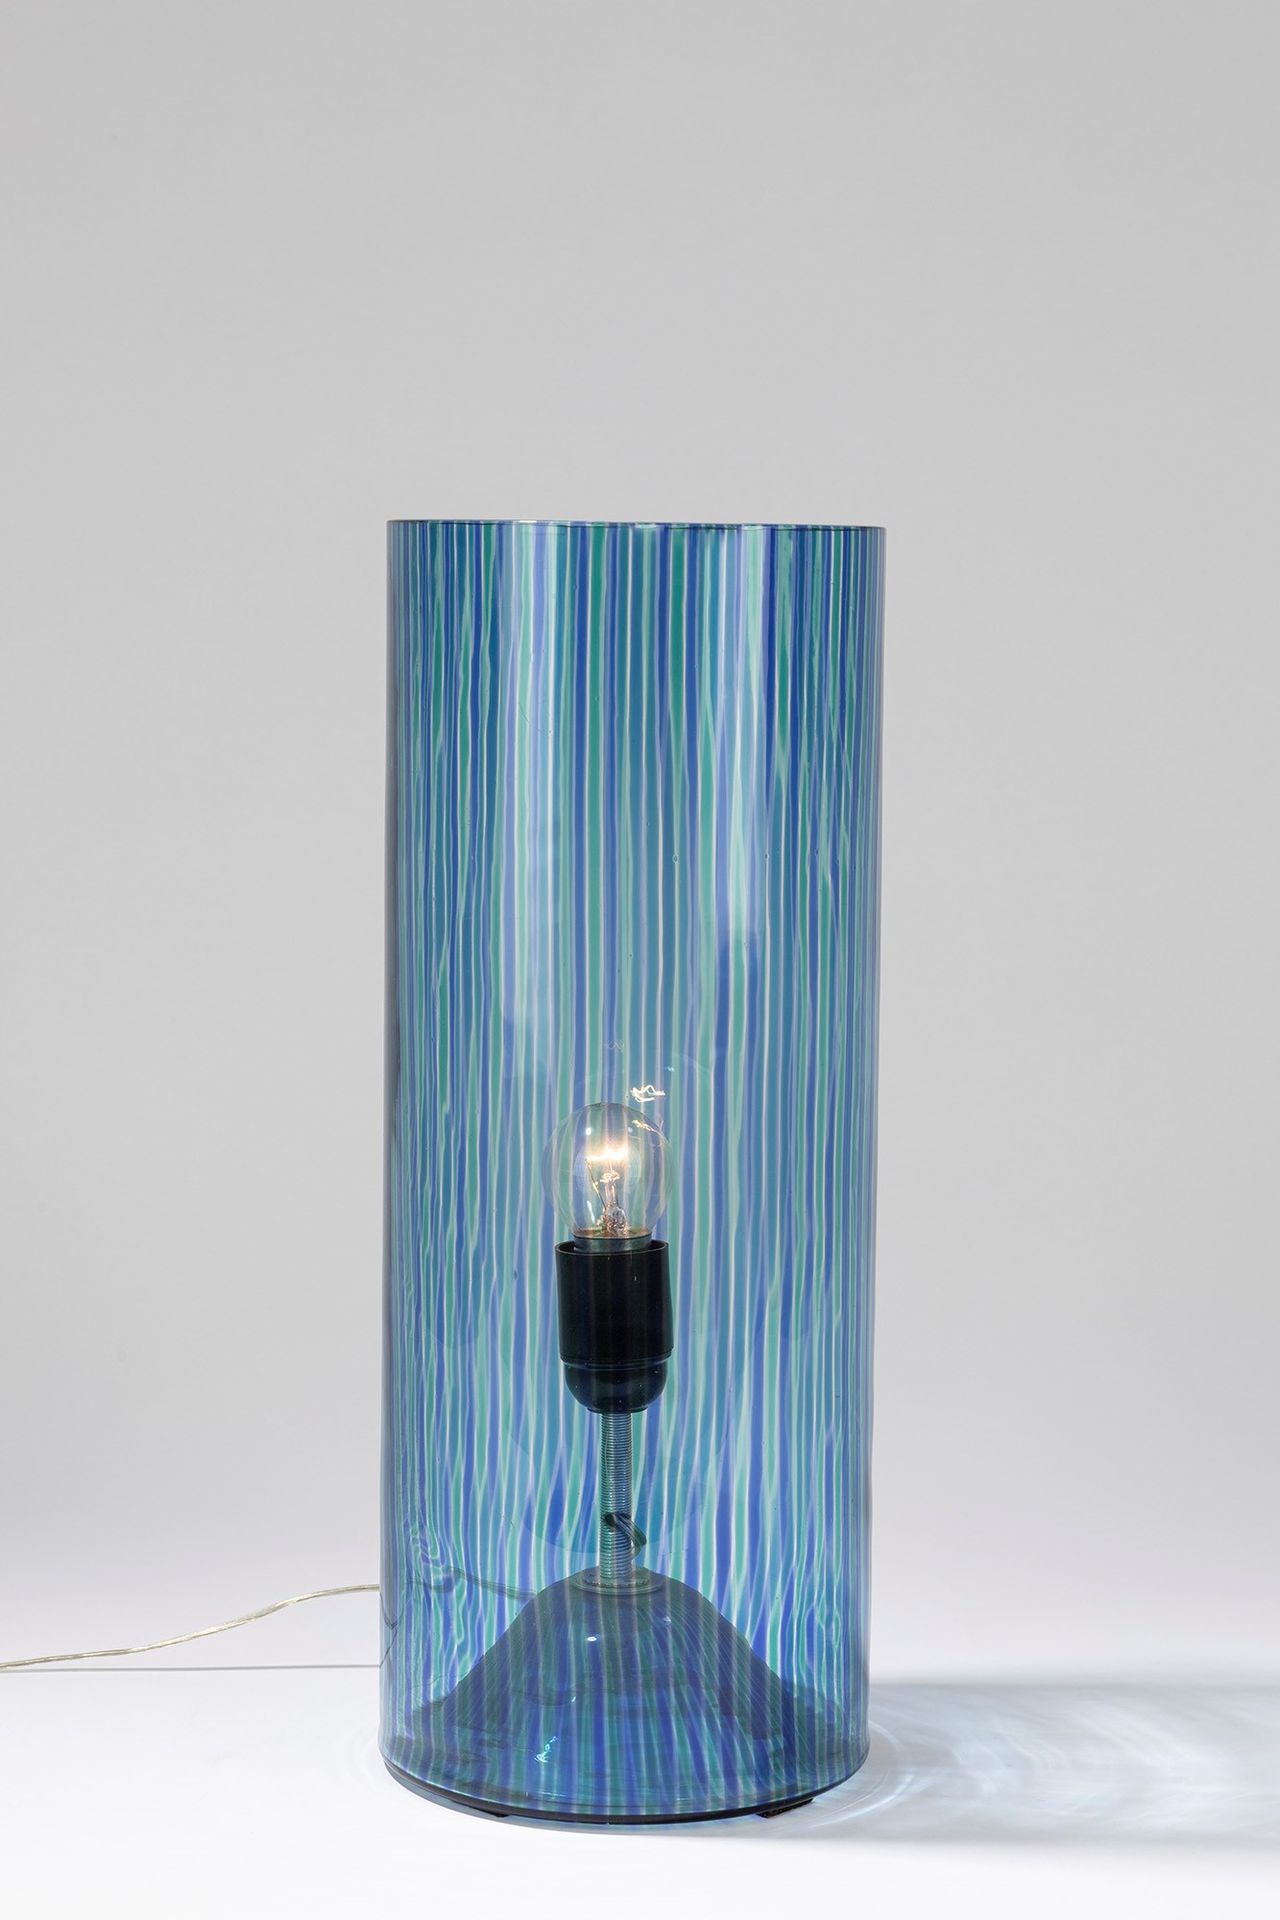 ITALIAN MANUFACTURE Lampe de table, période 60's

dm 16 cm h 40.5 cm
corps cylin&hellip;